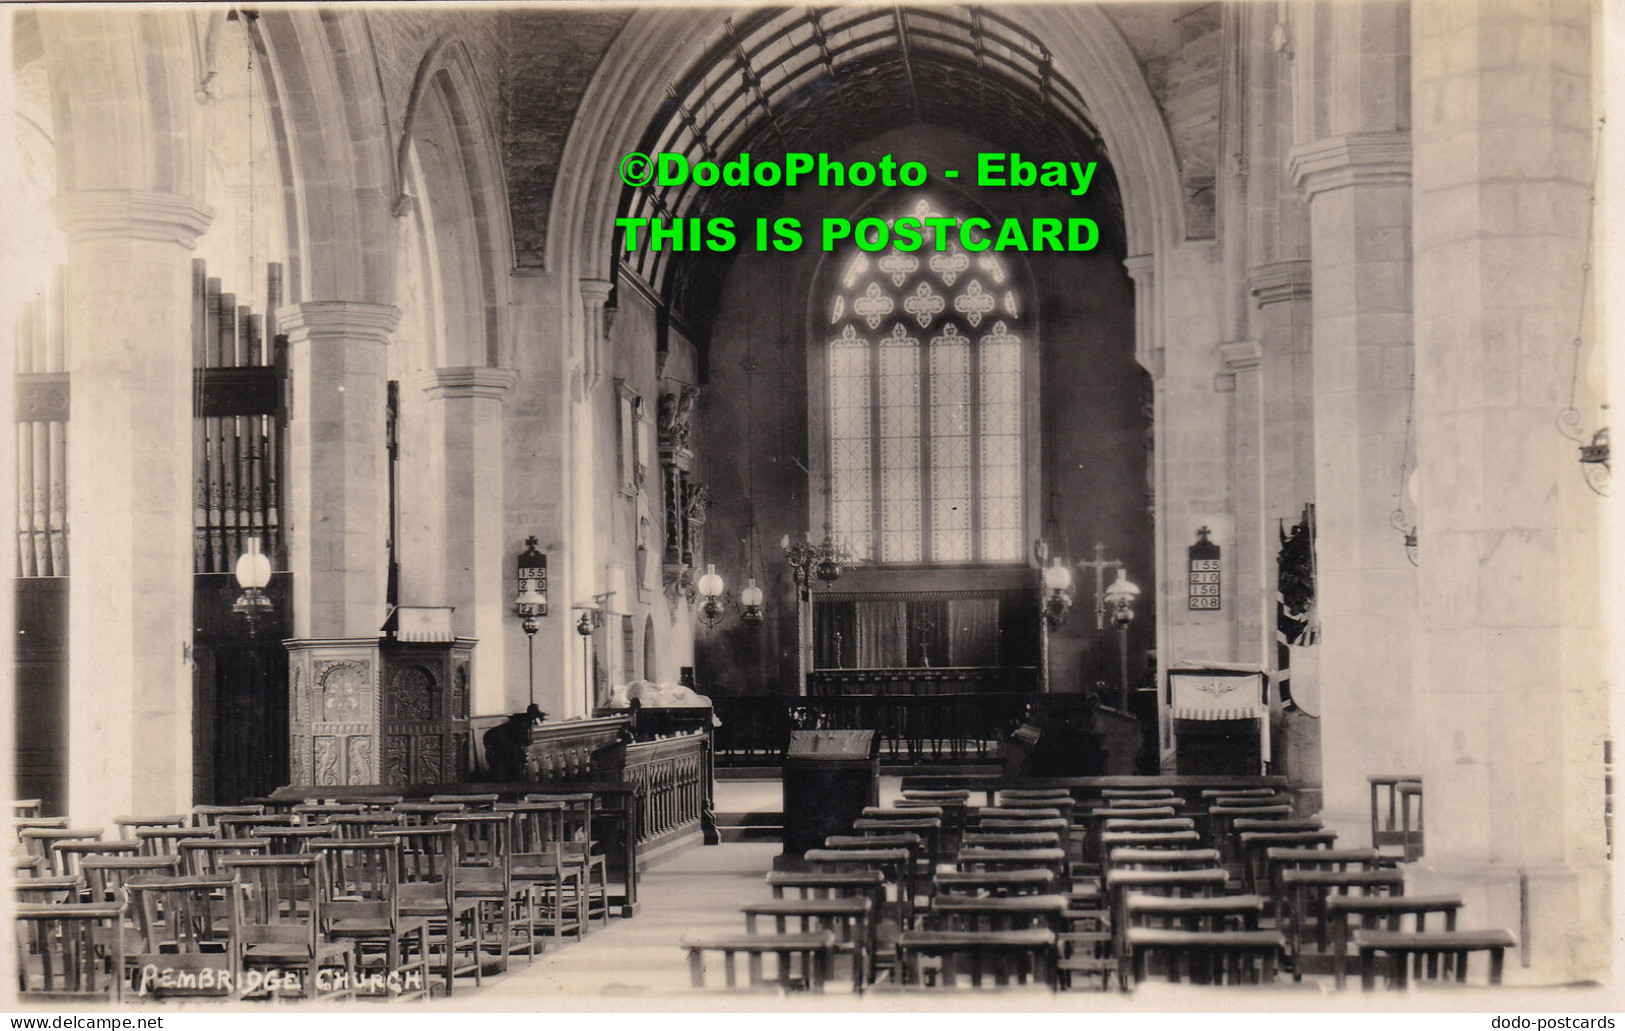 R384697 Pembridge Church. Post Card - World